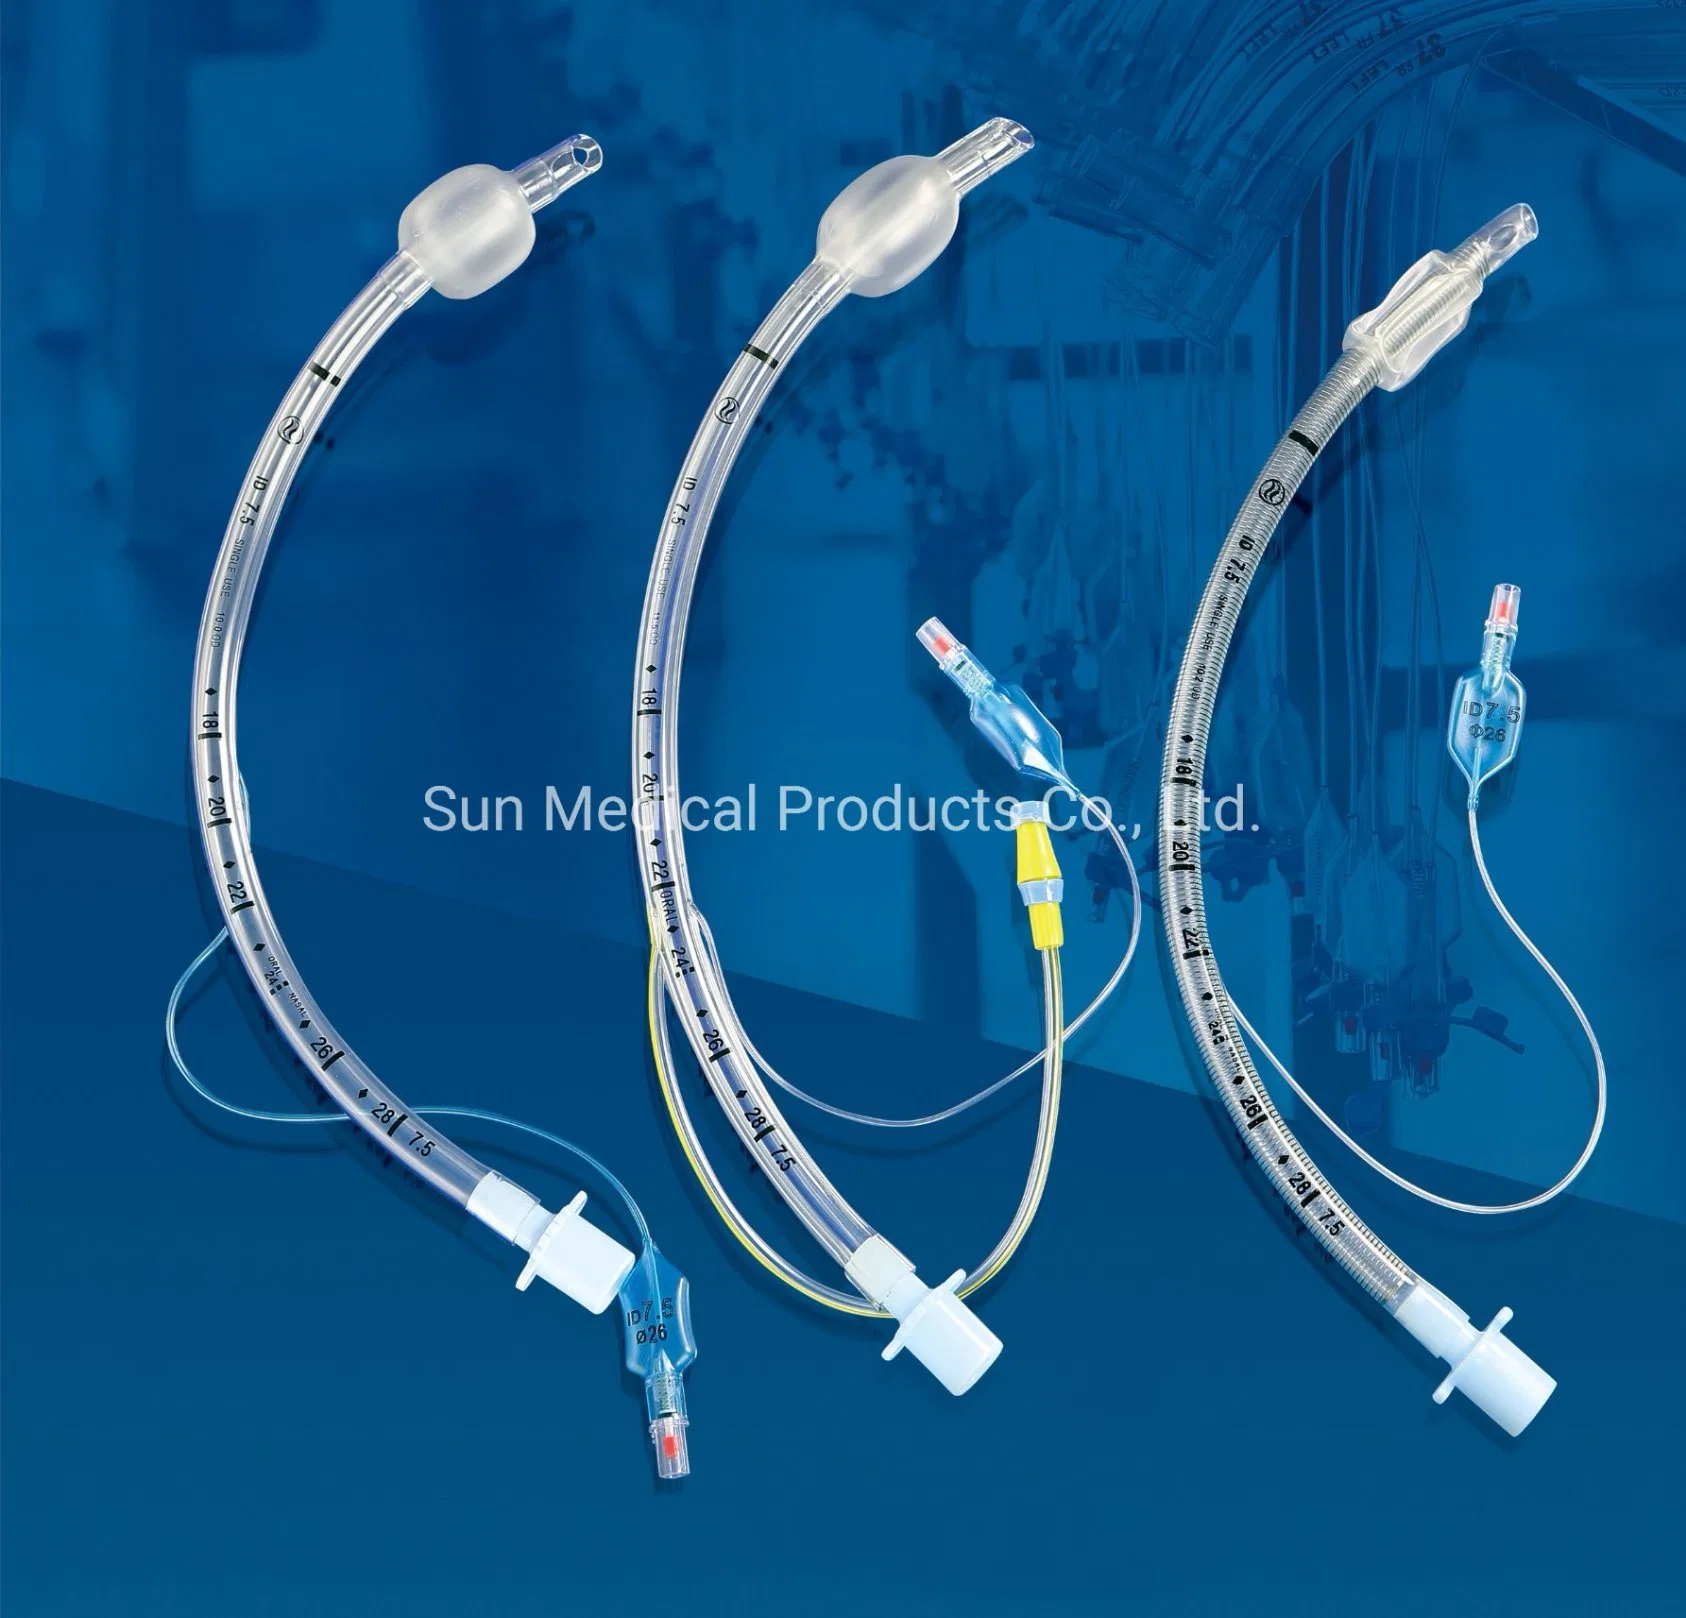 Tubo endotraqueal descartável CE e ISO - intubação traqueal com Cateter traqueal Tubo